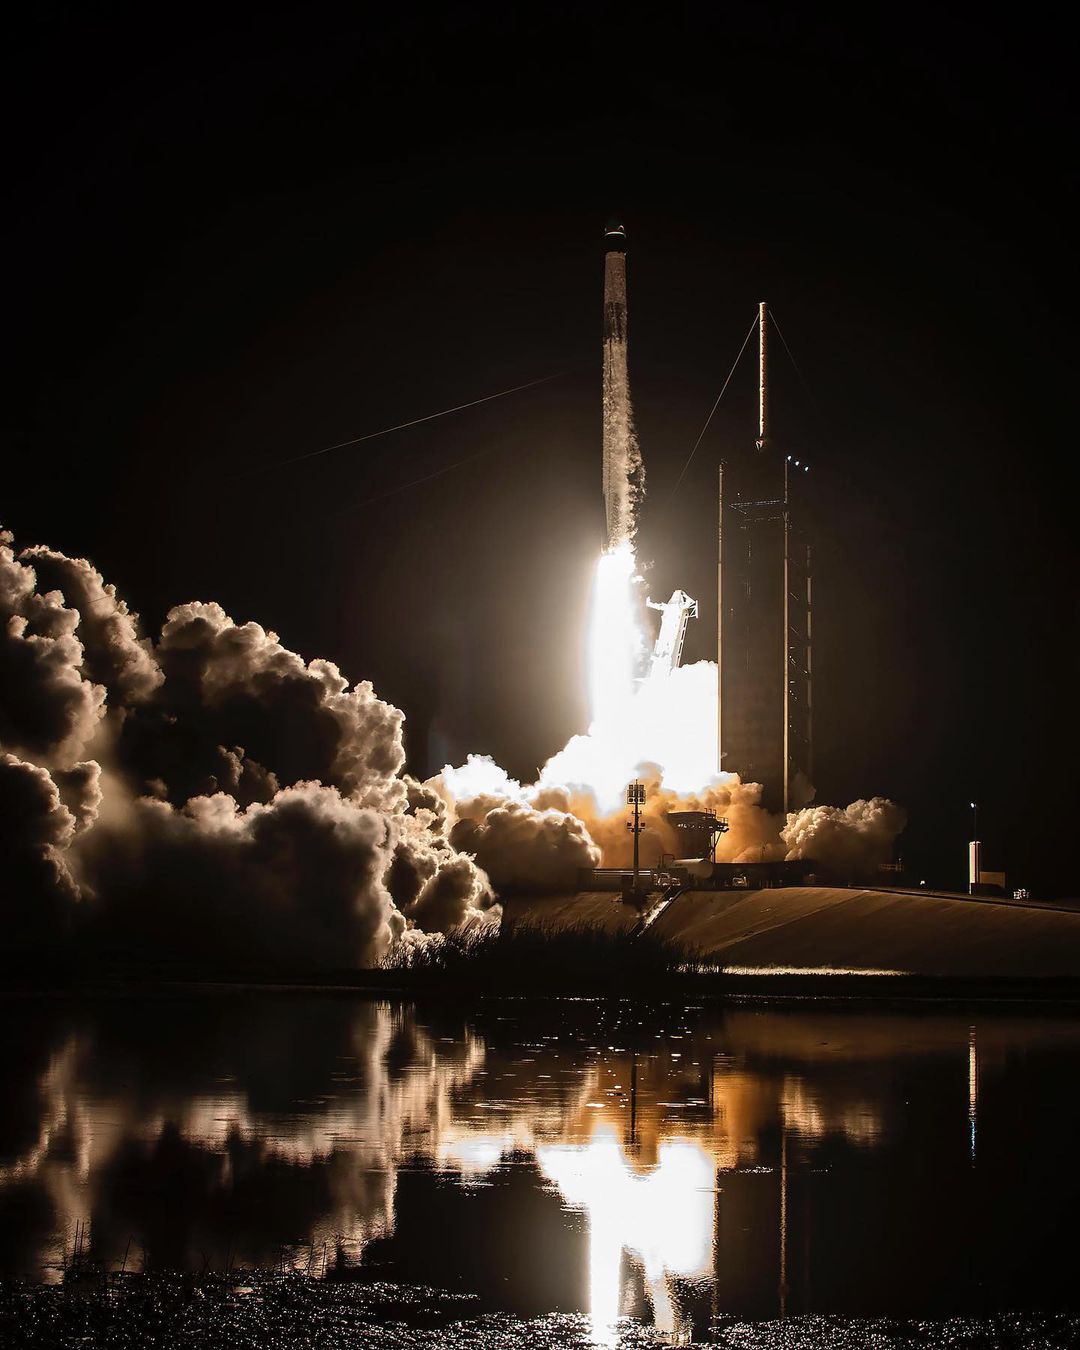 Štyria astronauti — zastupujúci štyri národy a vesmírne agentúry z celého sveta — odštartovali na palube rakety SpaceX smerom k Medzinárodnej vesmírnej stanici, čím odštartovali približne 6-mesačnú misiu.